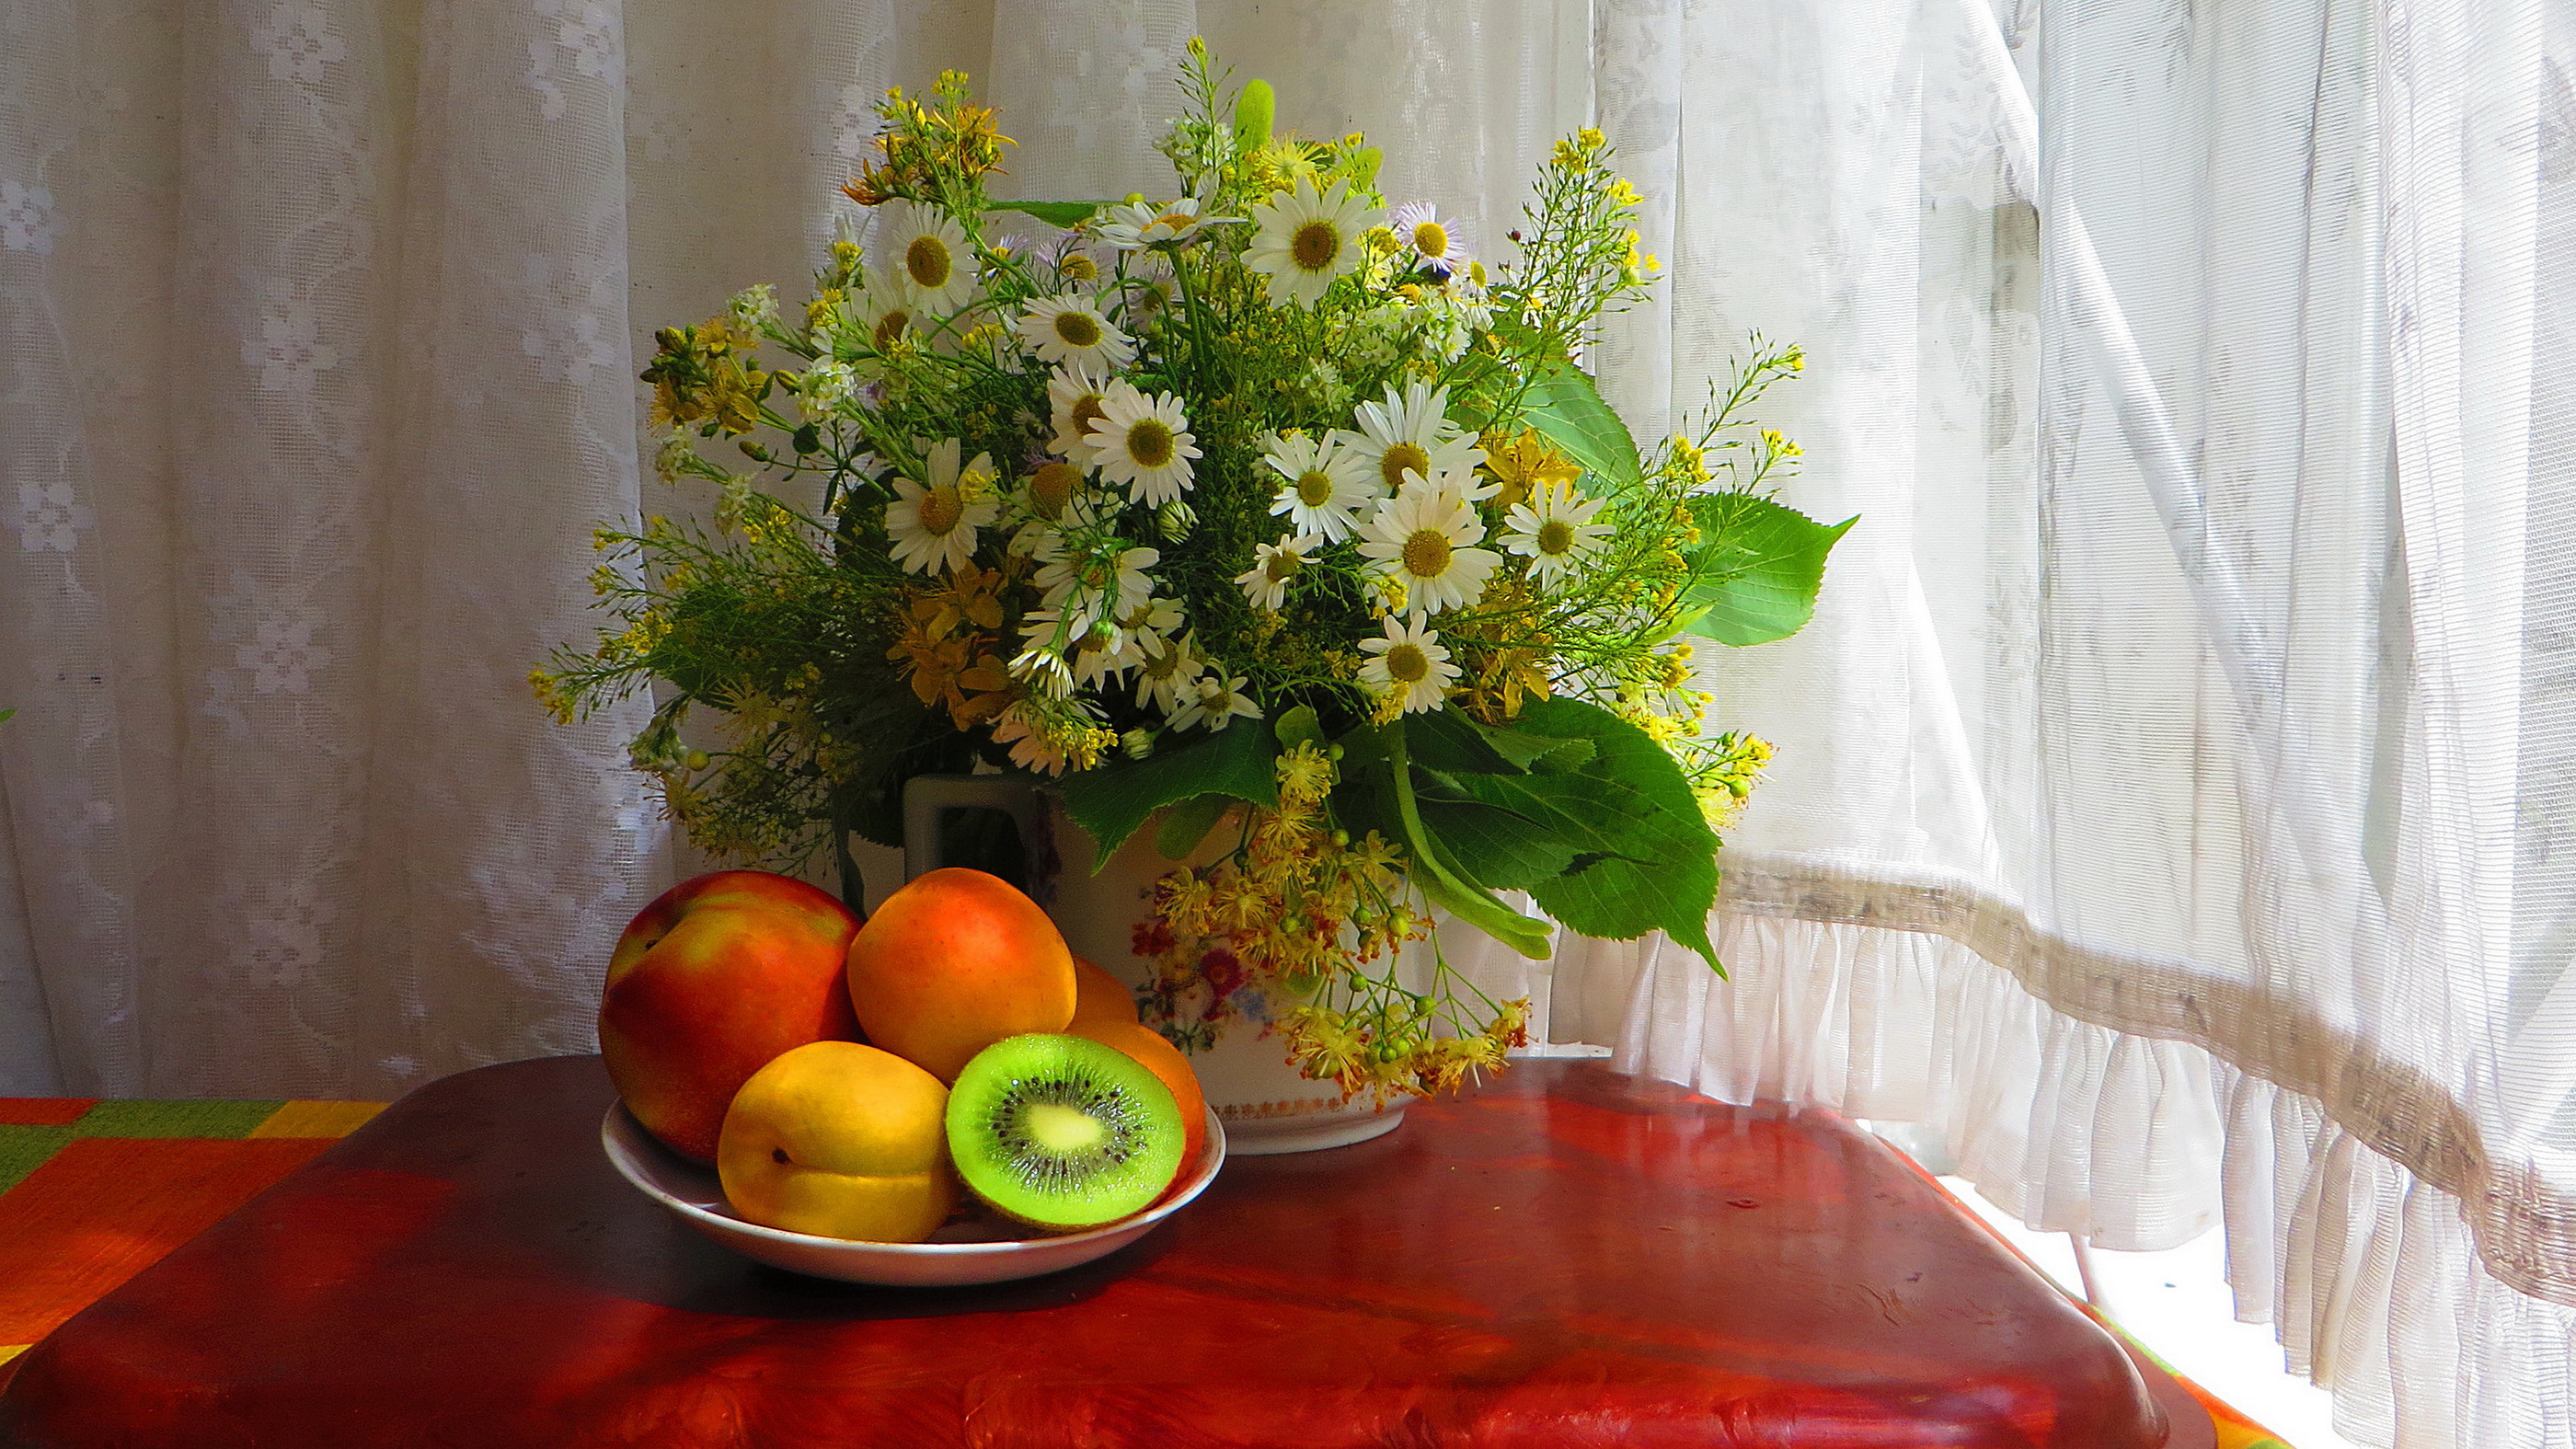 Bowl Curtain Daisy Flower Fruit Still Life Vase 2800x1575